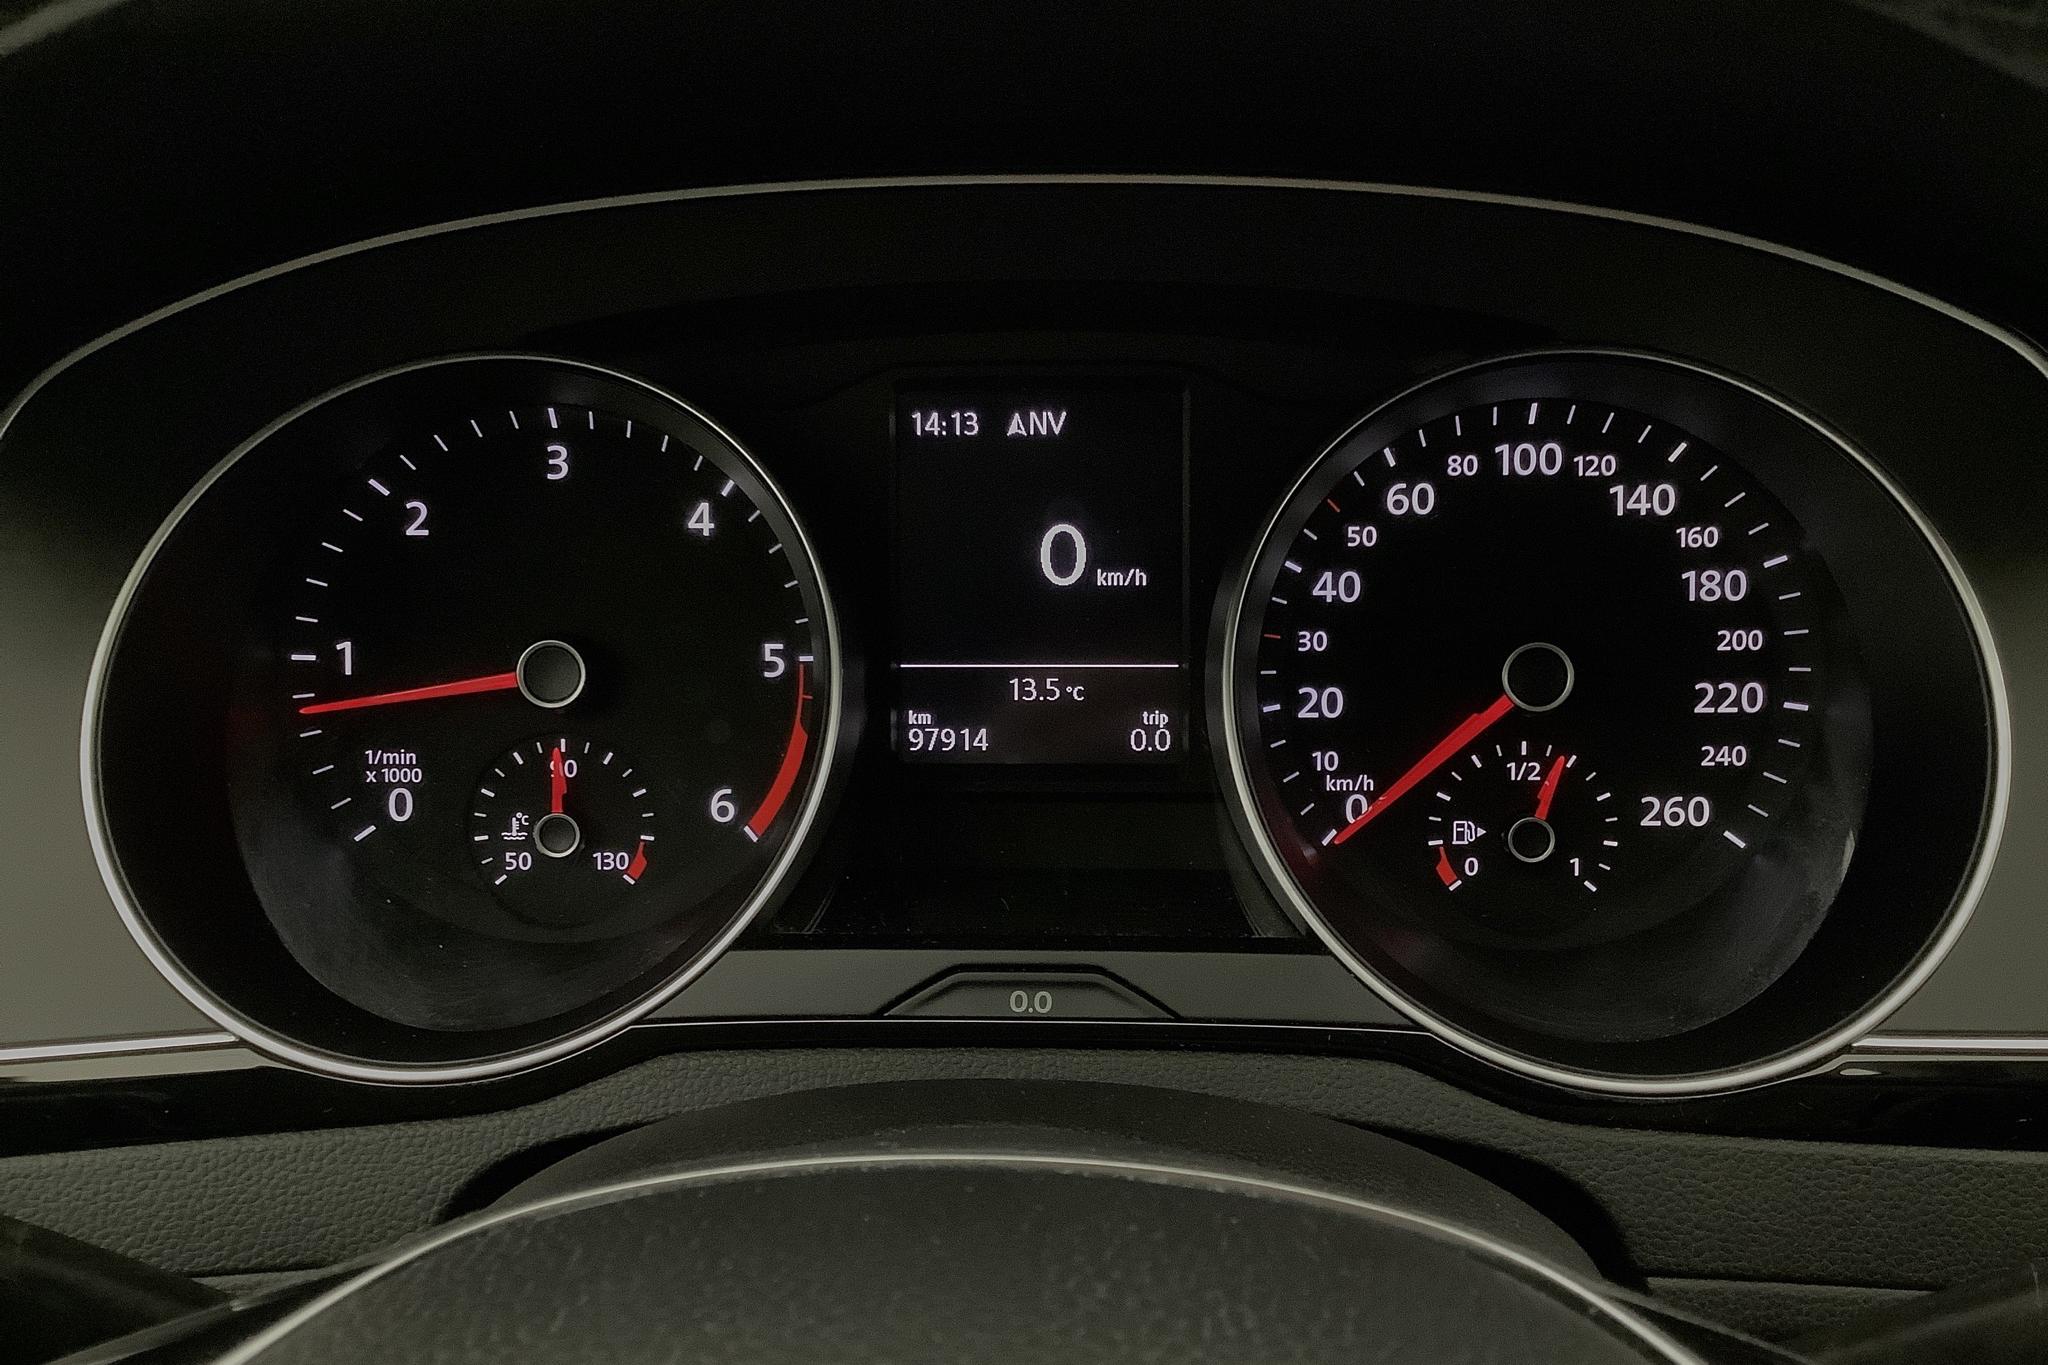 VW Passat 2.0 TDI Sportscombi (150hk) - 97 920 km - Manual - white - 2018